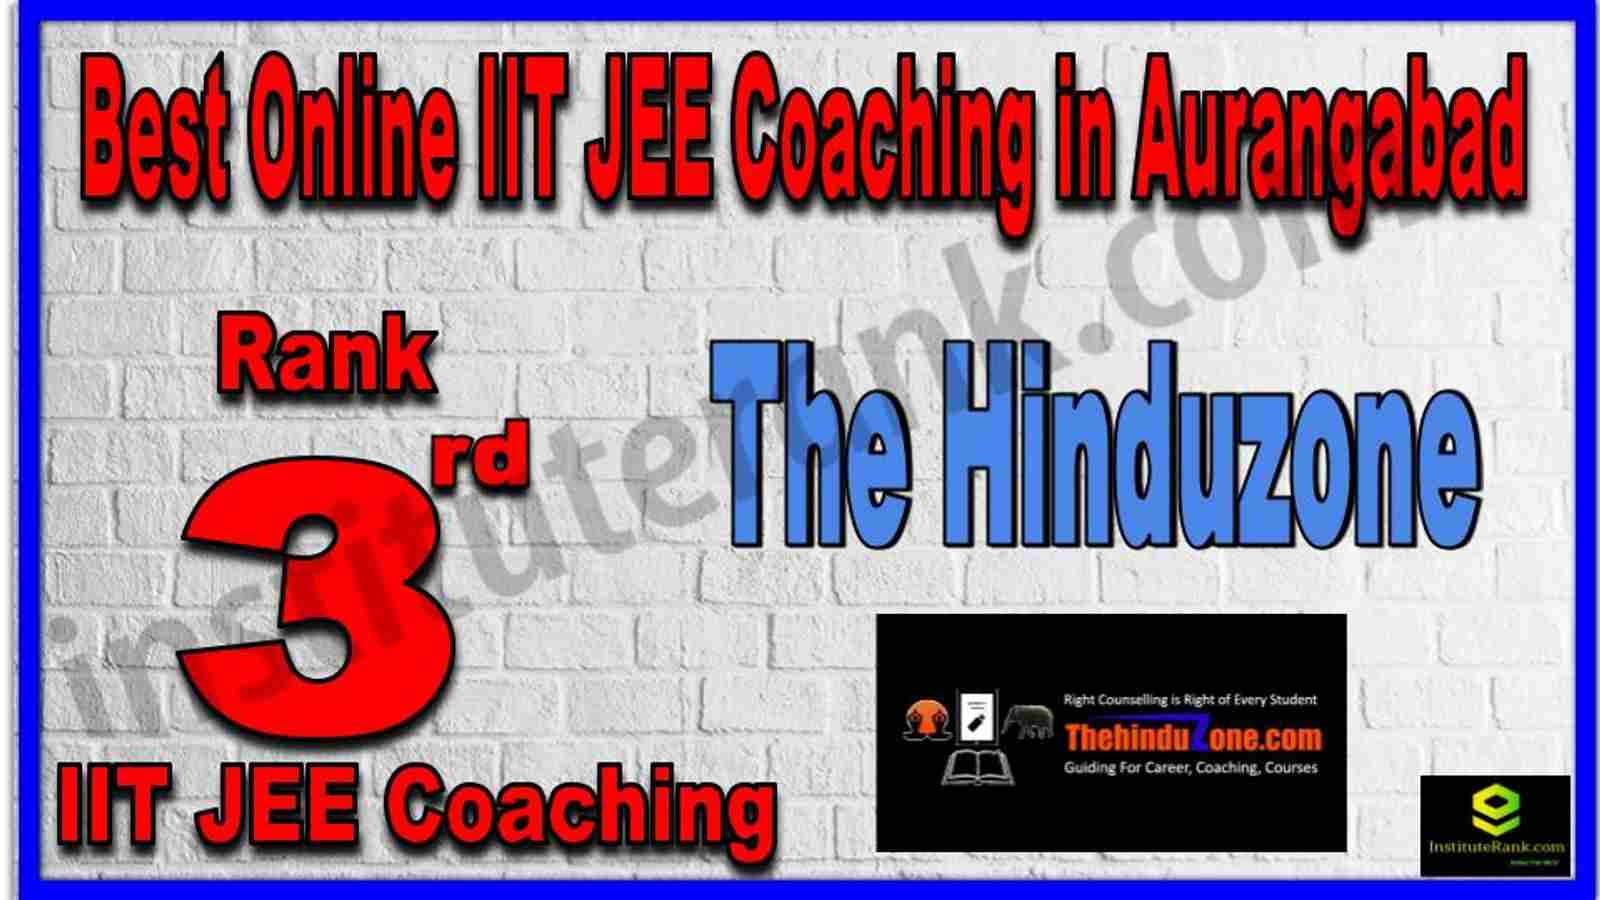 Rank 3rd Best Online IIT JEE Coaching in Aurangabad